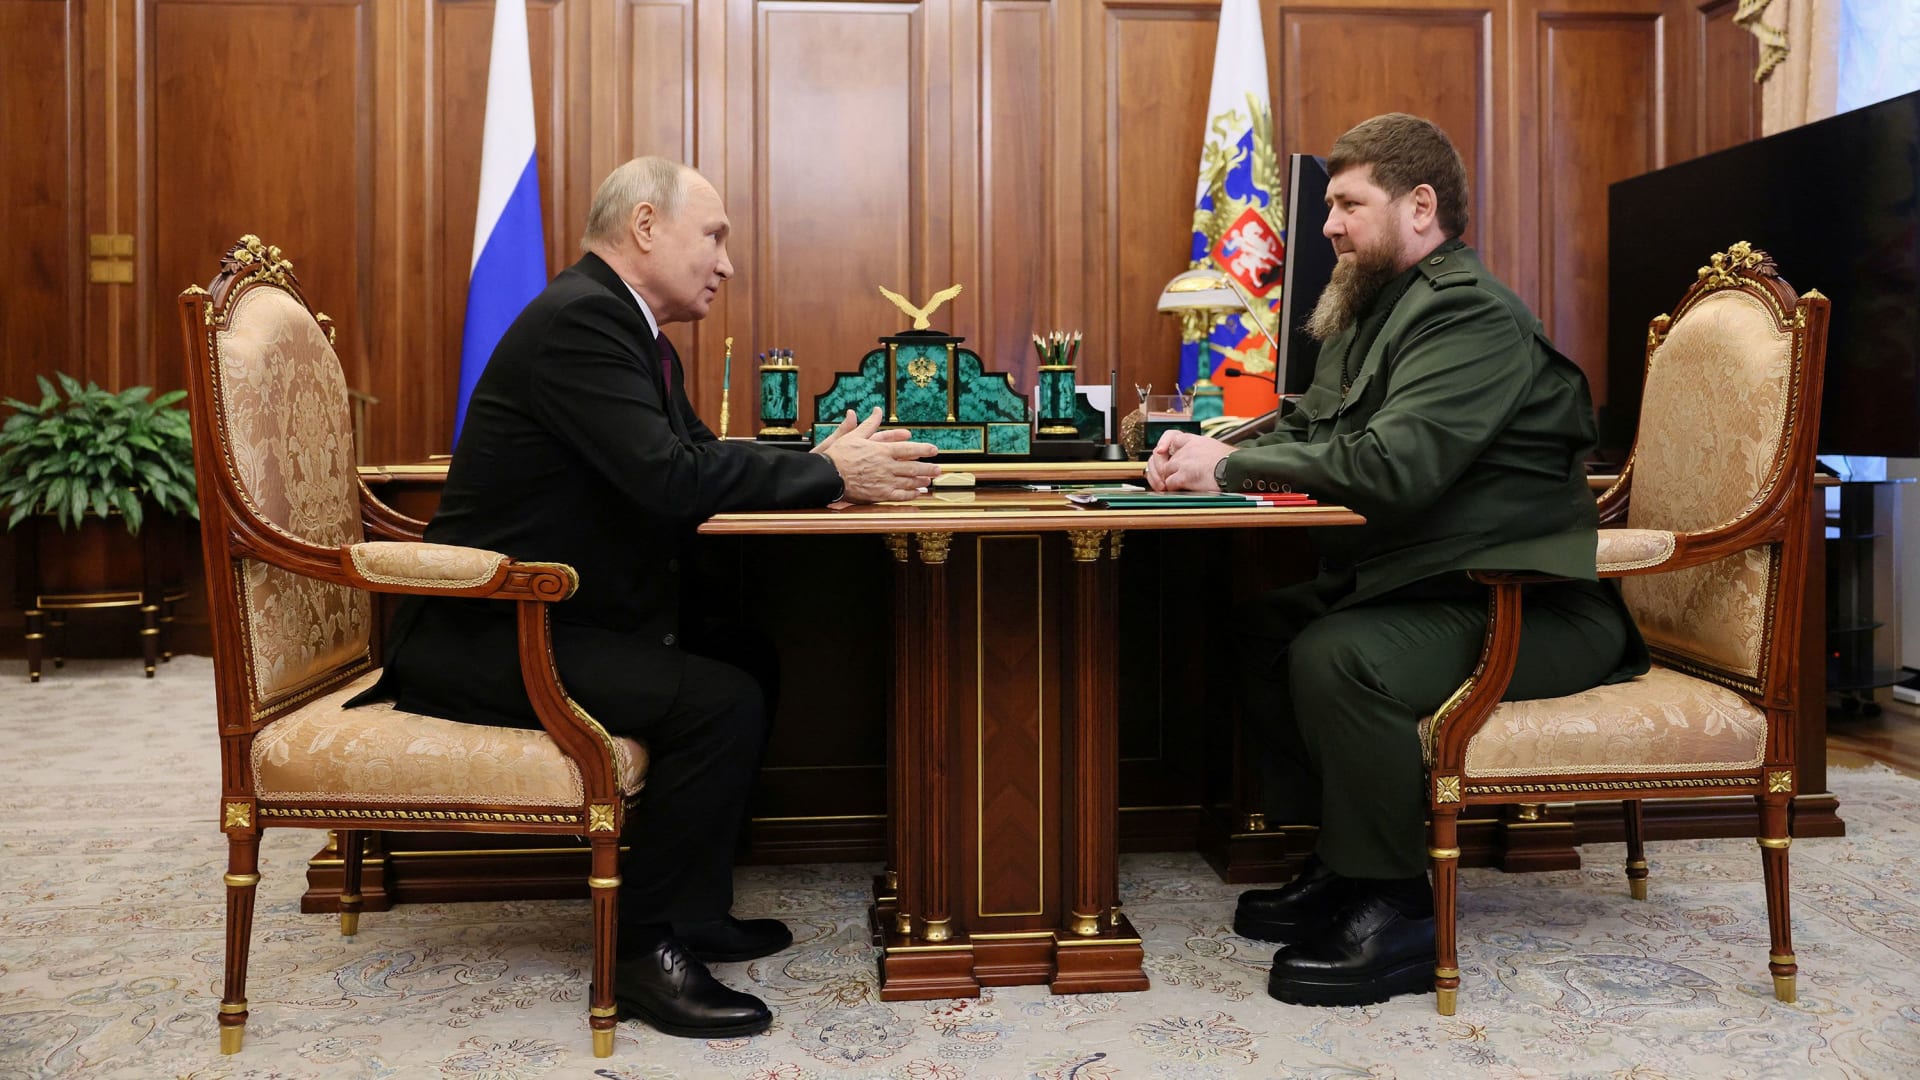 لتبديد الشائعات.. روسيا تبعث رسالة في فيديو جديد لبوتين وزعيم الشيشان